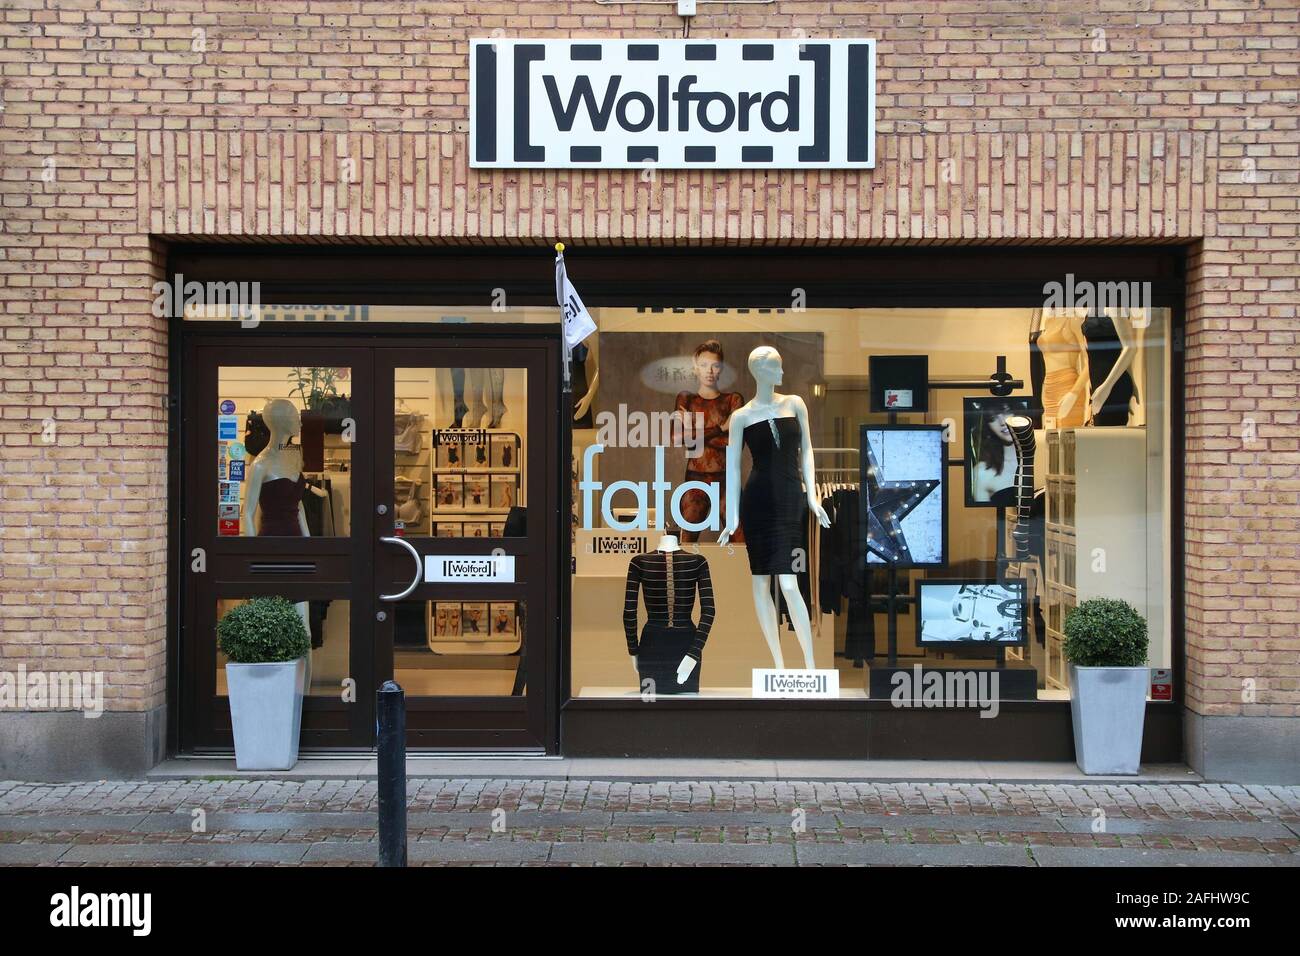 Göteborg, Schweden - 27. AUGUST 2018: Wolford Fashion Store in Göteborg,  Schweden. Wolford ist eine österreichische Bekleidung Marke in 60 Ländern  Stockfotografie - Alamy